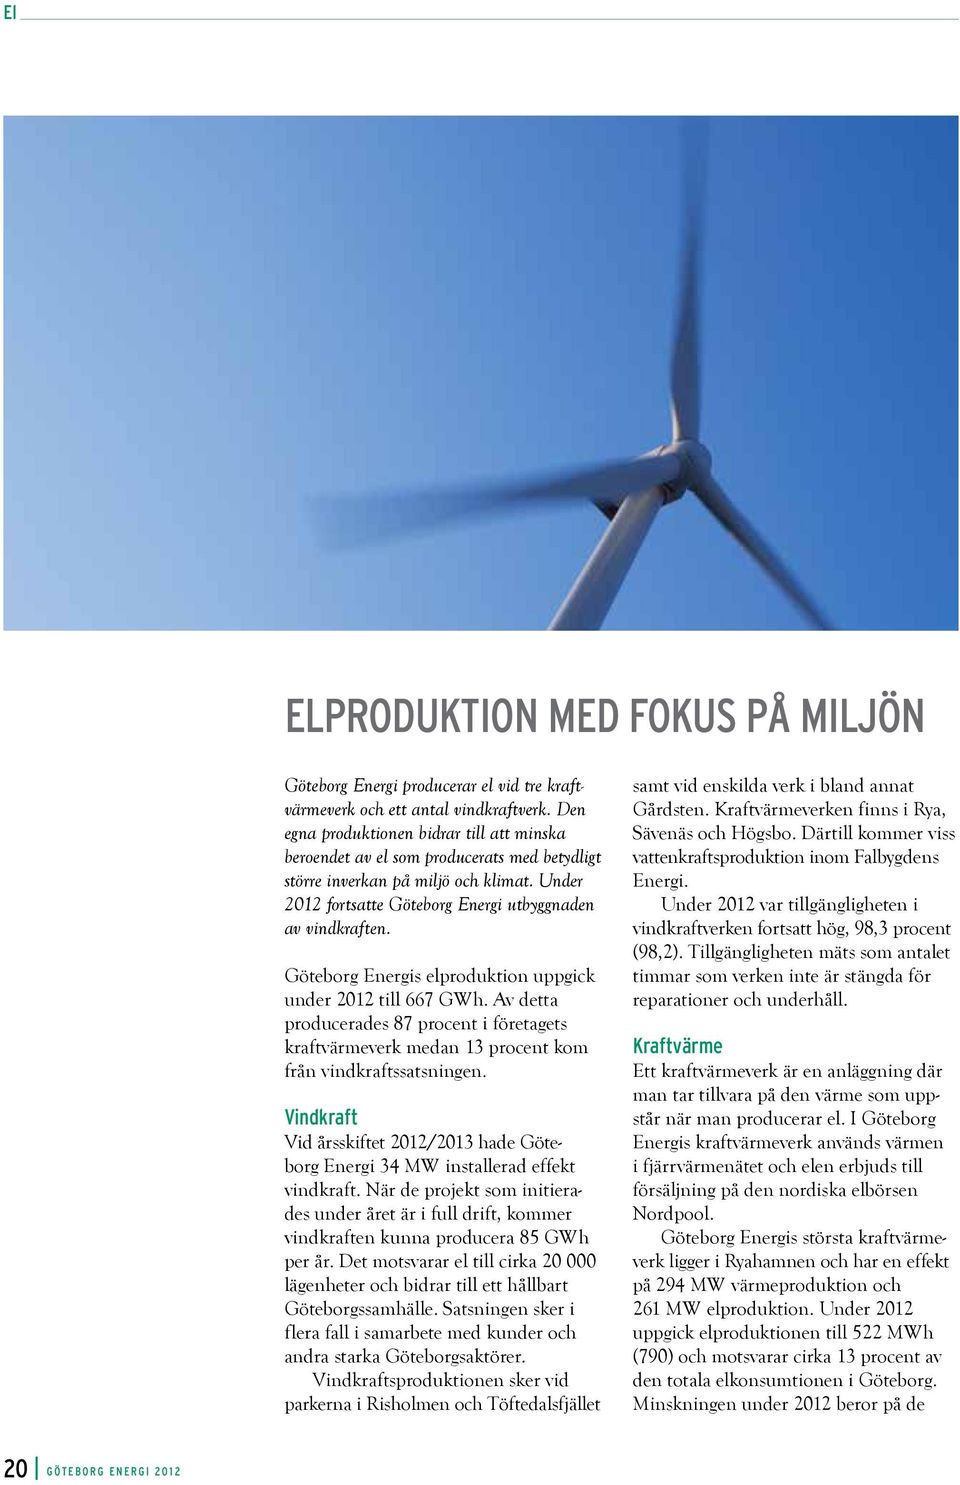 Göteborg Energis elproduktion uppgick under 2012 till 667 GWh. Av detta producerades 87 procent i företagets kraft värmeverk medan 13 procent kom från vindkraftssatsningen.